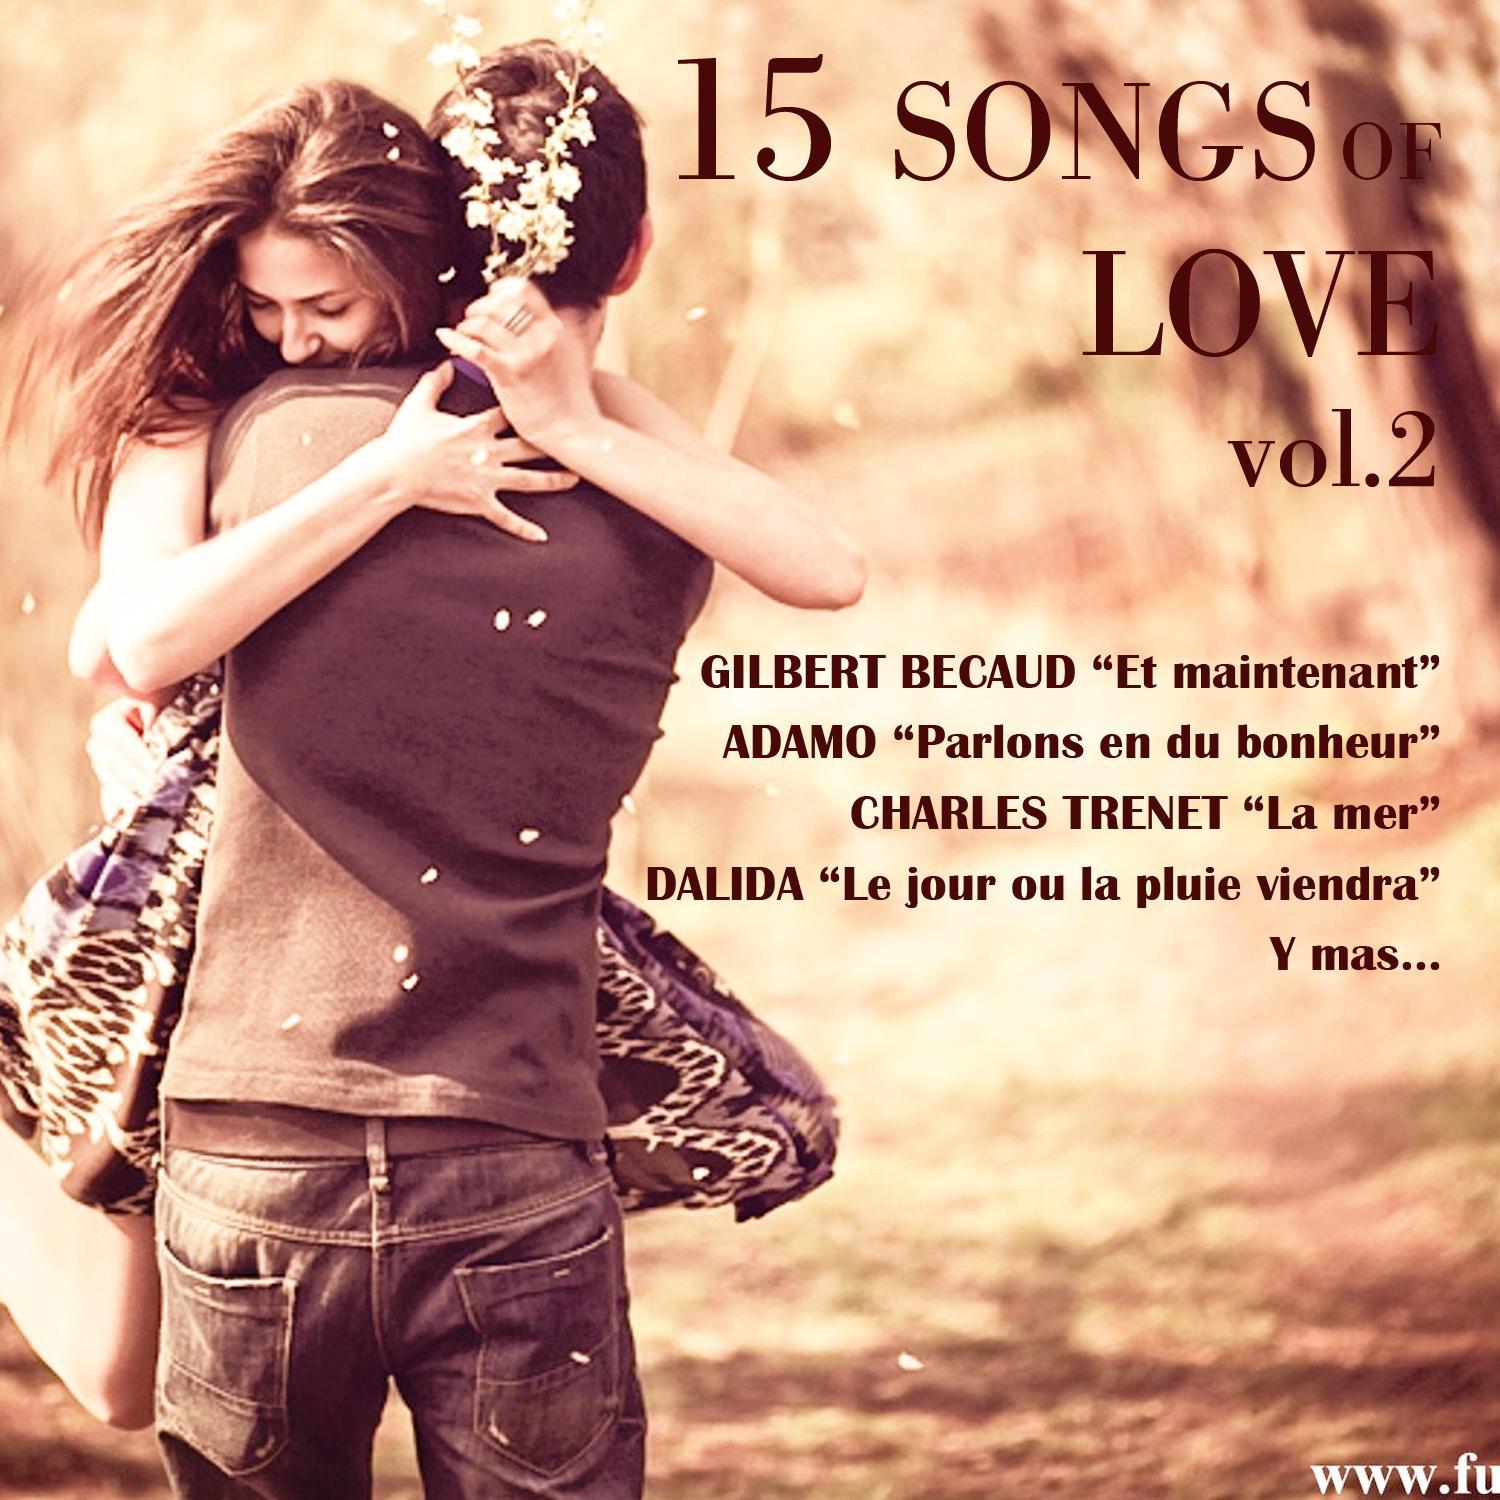 15 Songs Of Love, Vol. 2